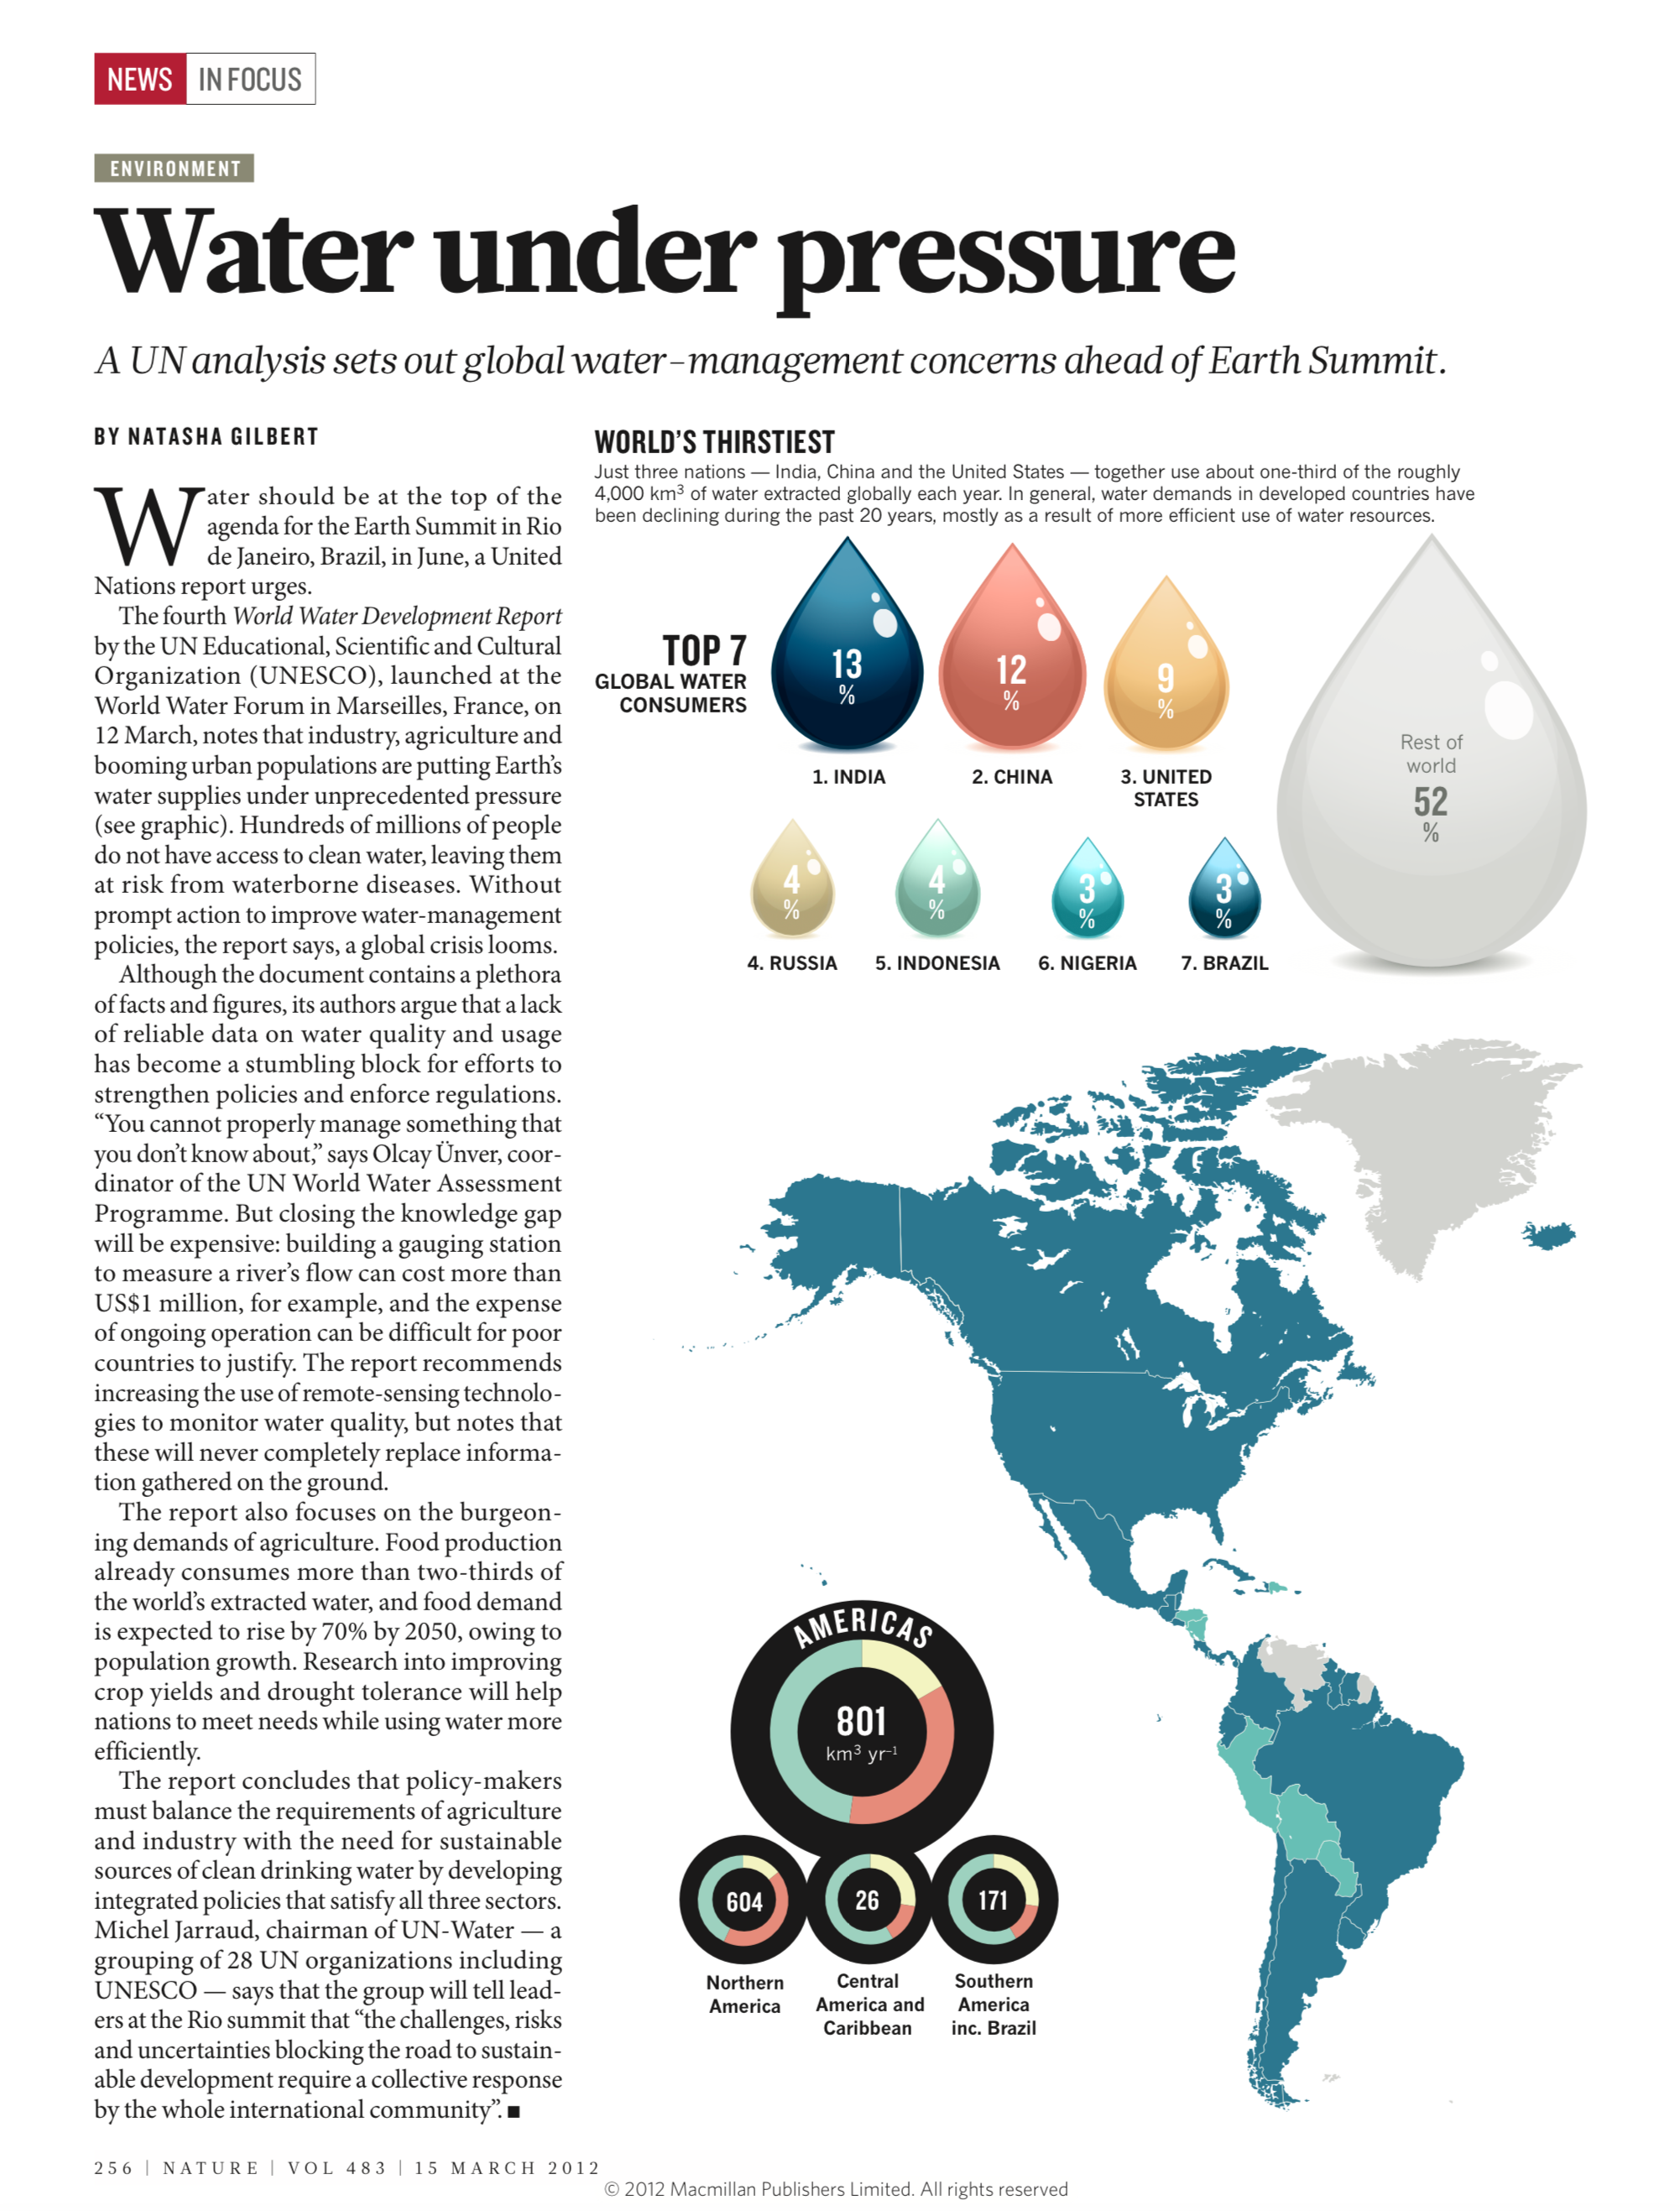 Water under pressure. Nature. 15 March 2012.